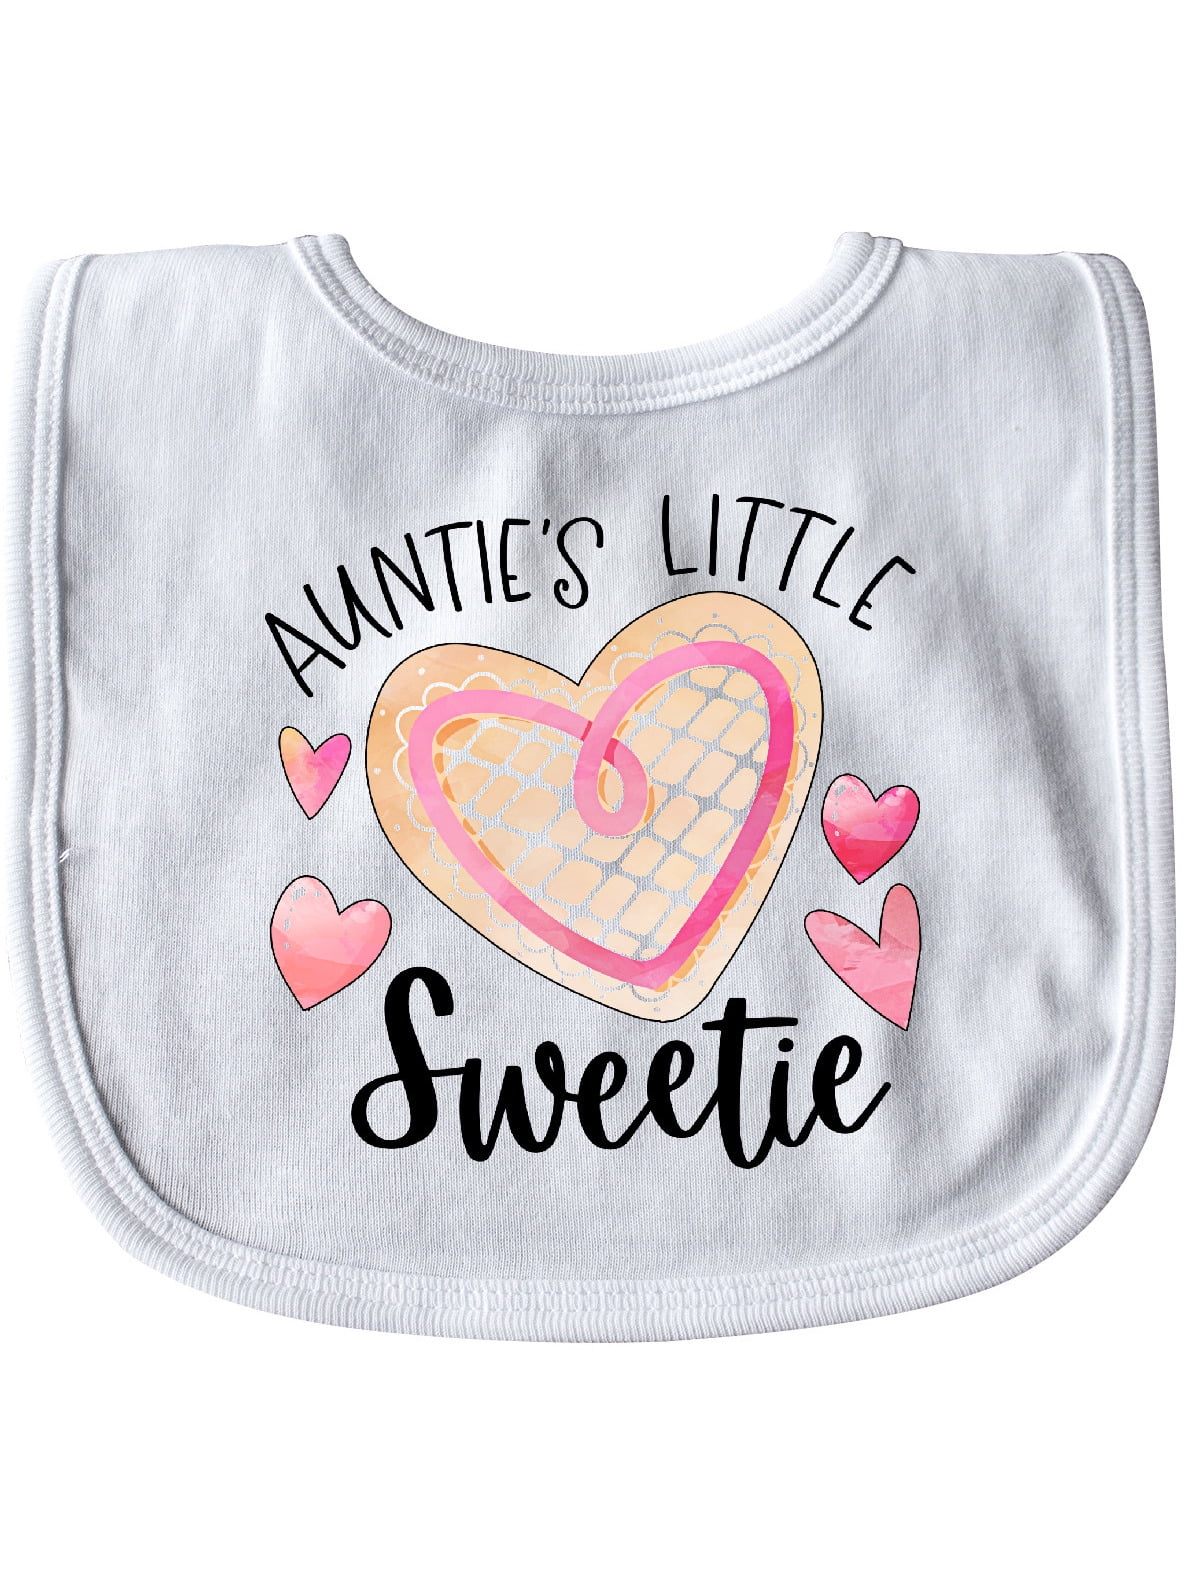 Auntie's Little Sweetie Pink Heart Cookie Baby Bib - Walmart.com ...